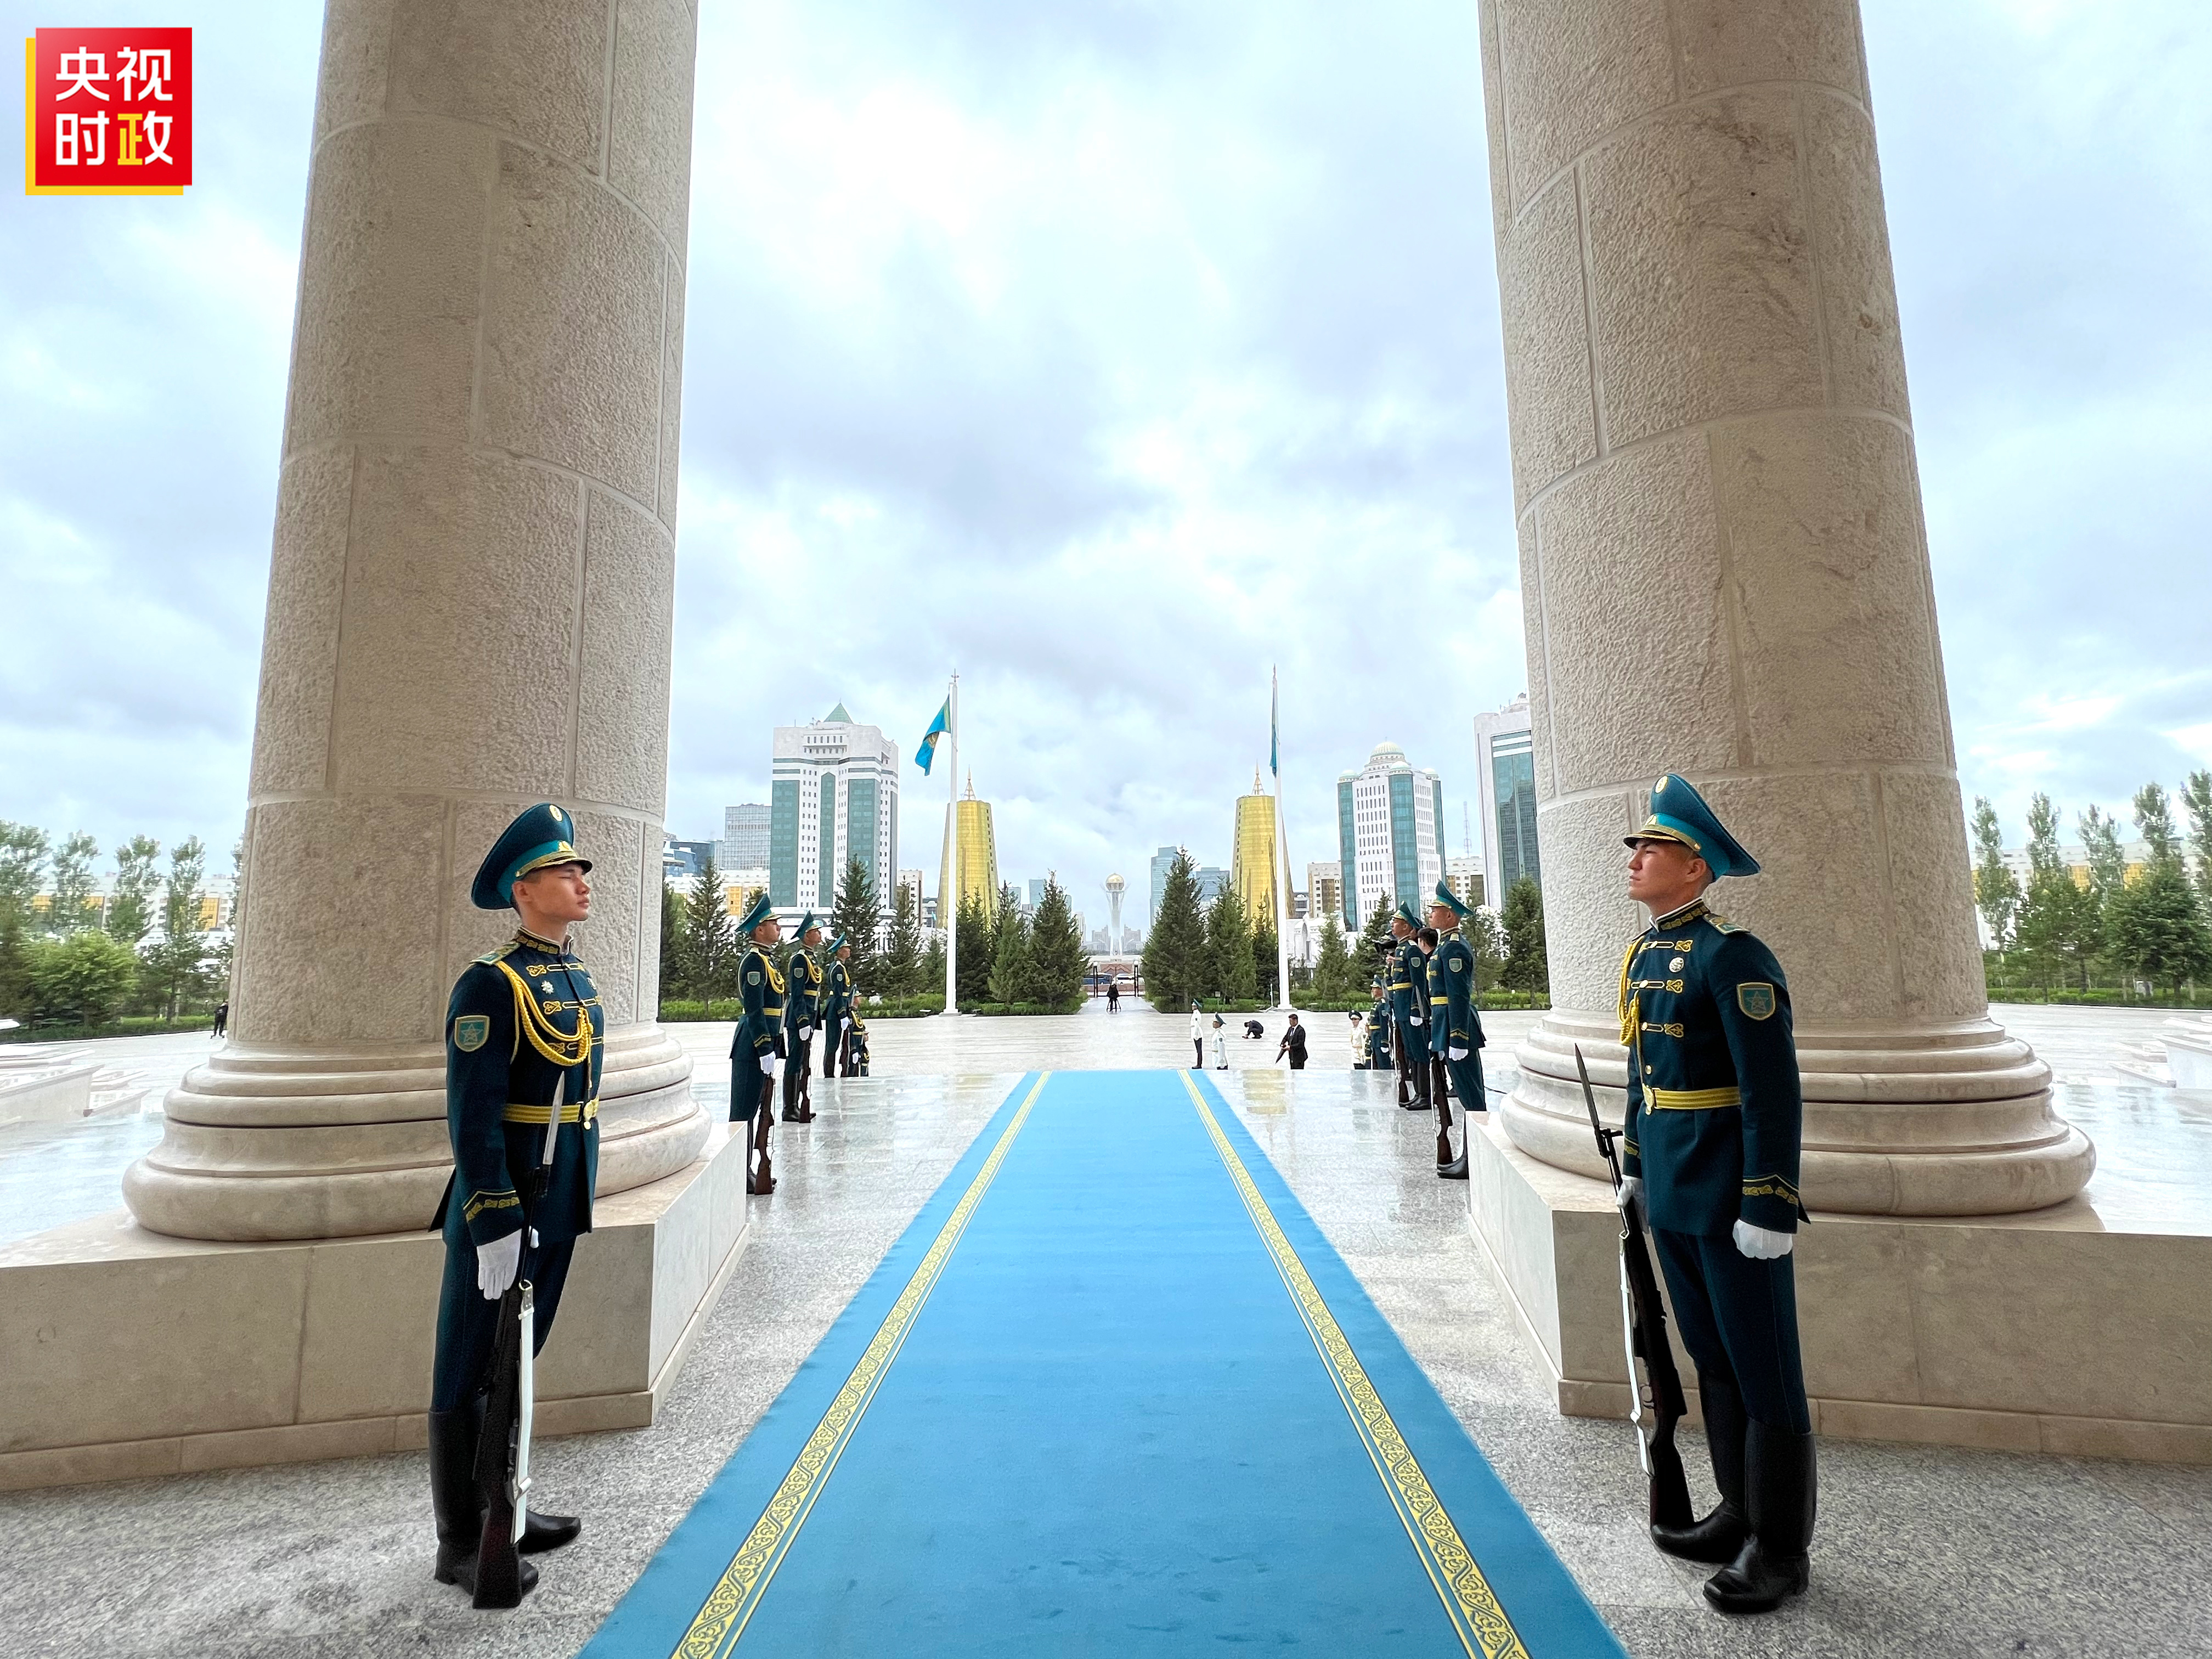 कजाकिस्तानको राष्ट्रपतीय भवनमा आयोजित स्वागत समारोहमा चिनियाँ राष्ट्राध्यक्ष  सी उपस्थित